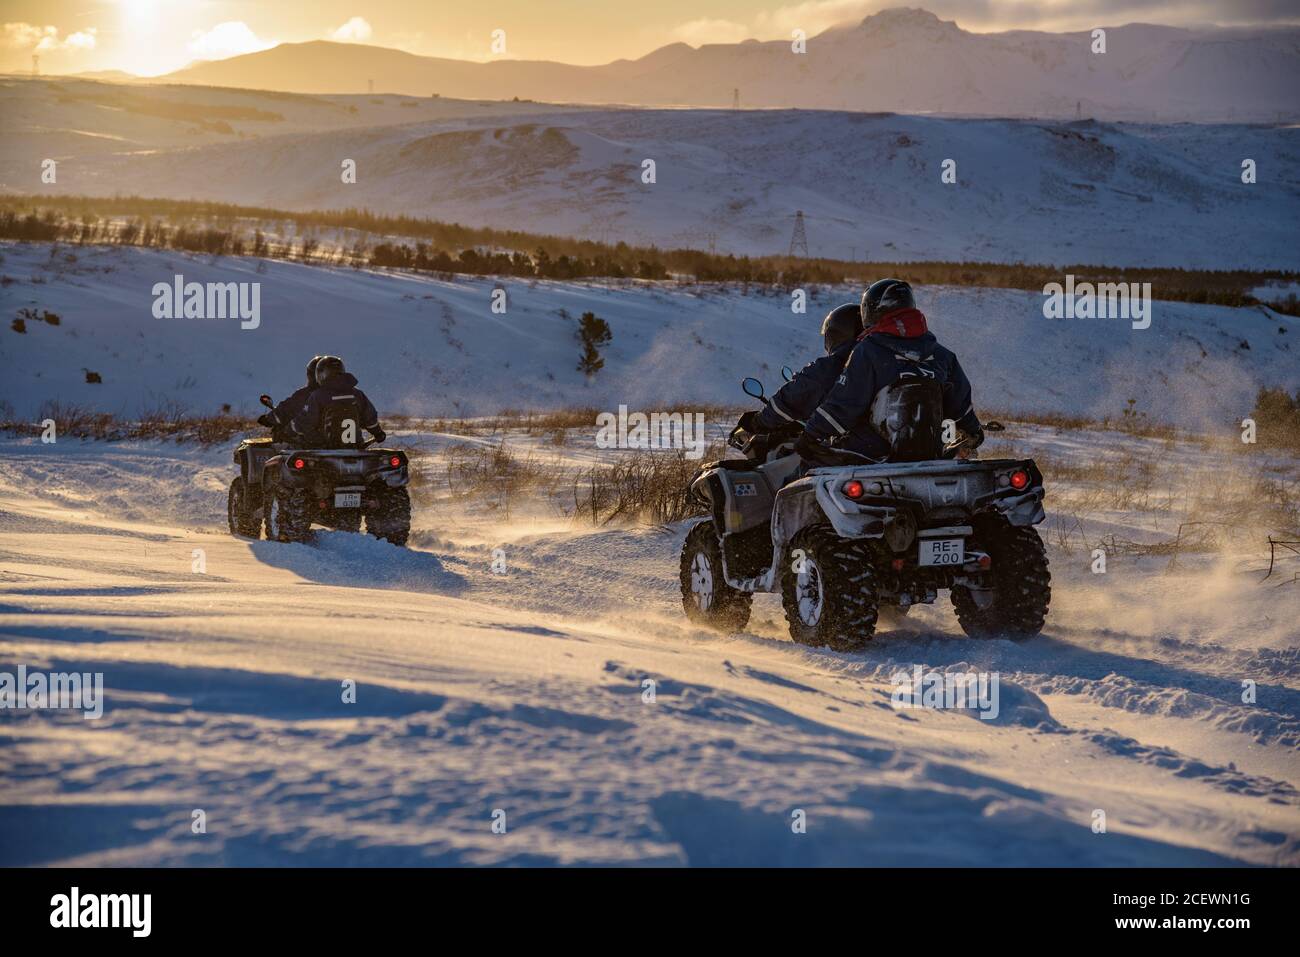 Les passagers de VTT descendent un sentier de montagne en hiver islandais Banque D'Images